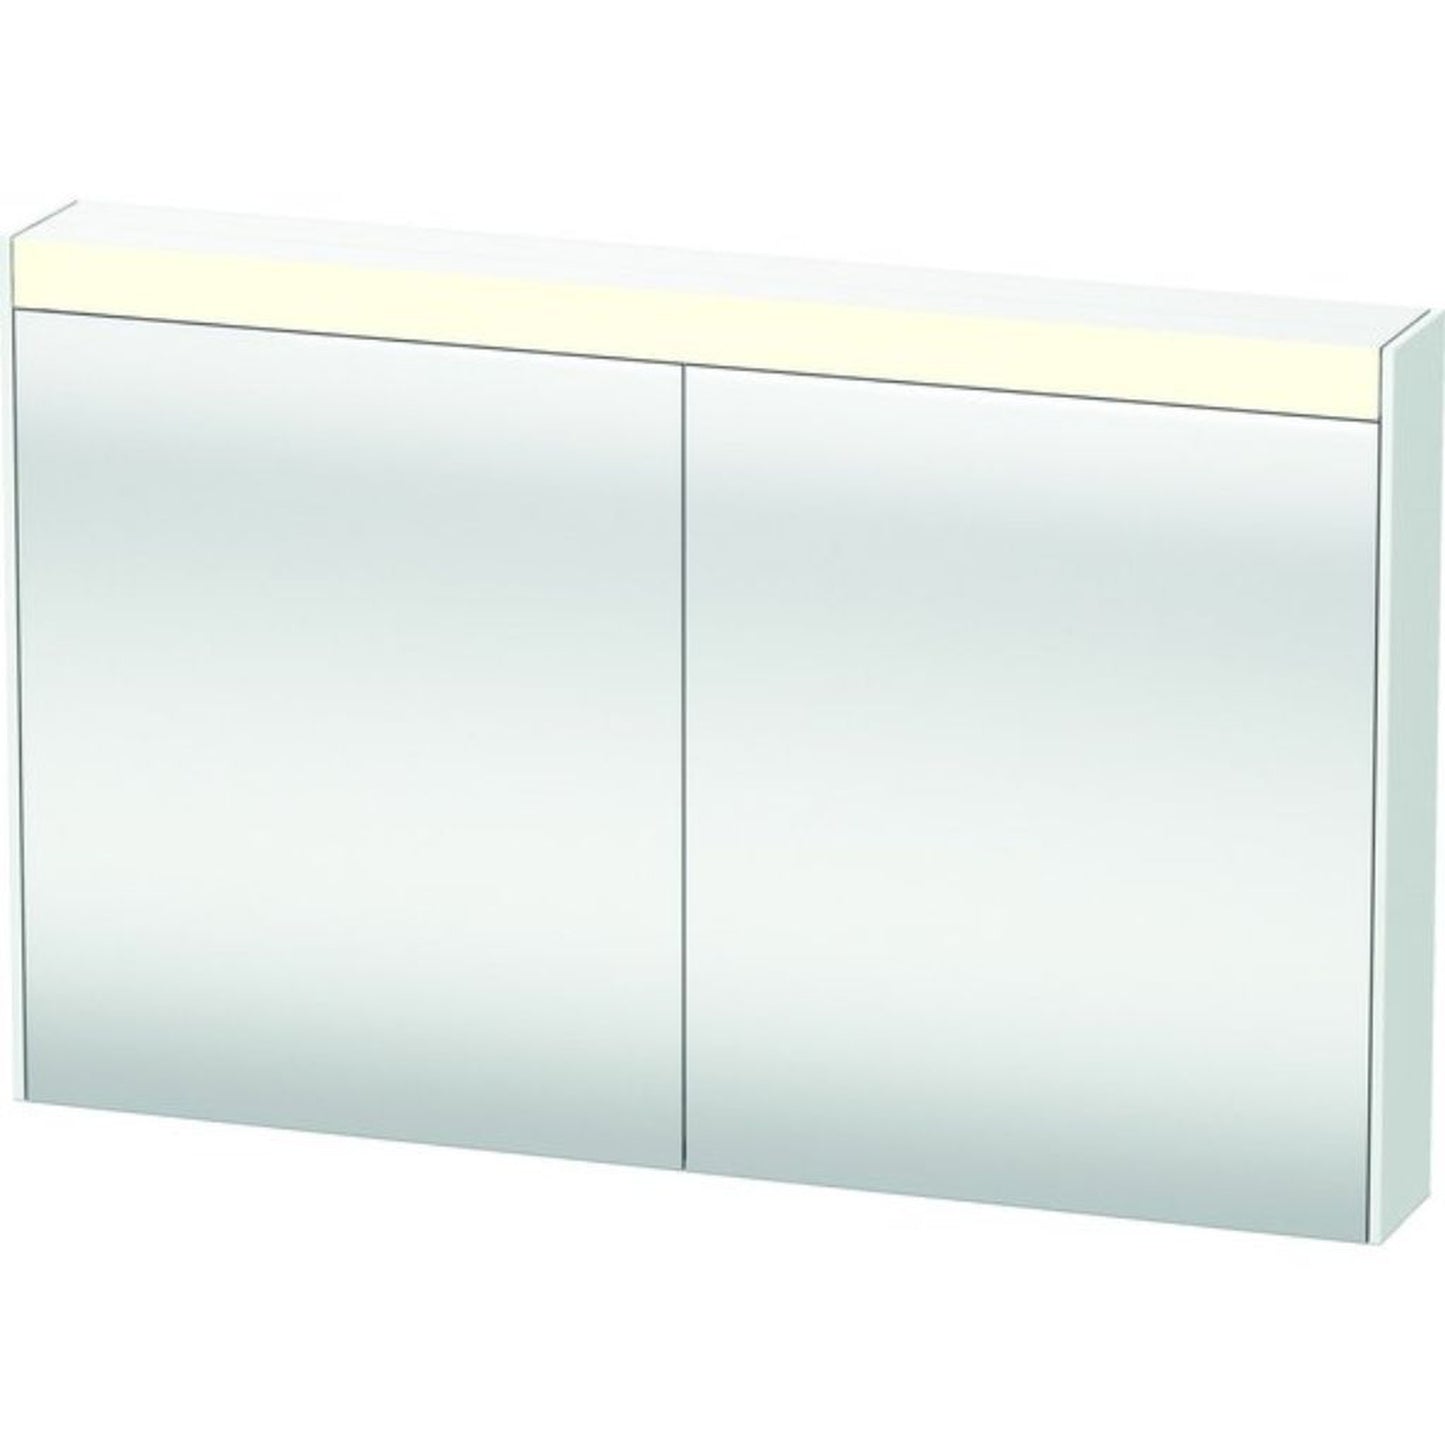 Duravit Brioso 48" x 30" x 6" Mirror Cabinet With Lighting White Matt